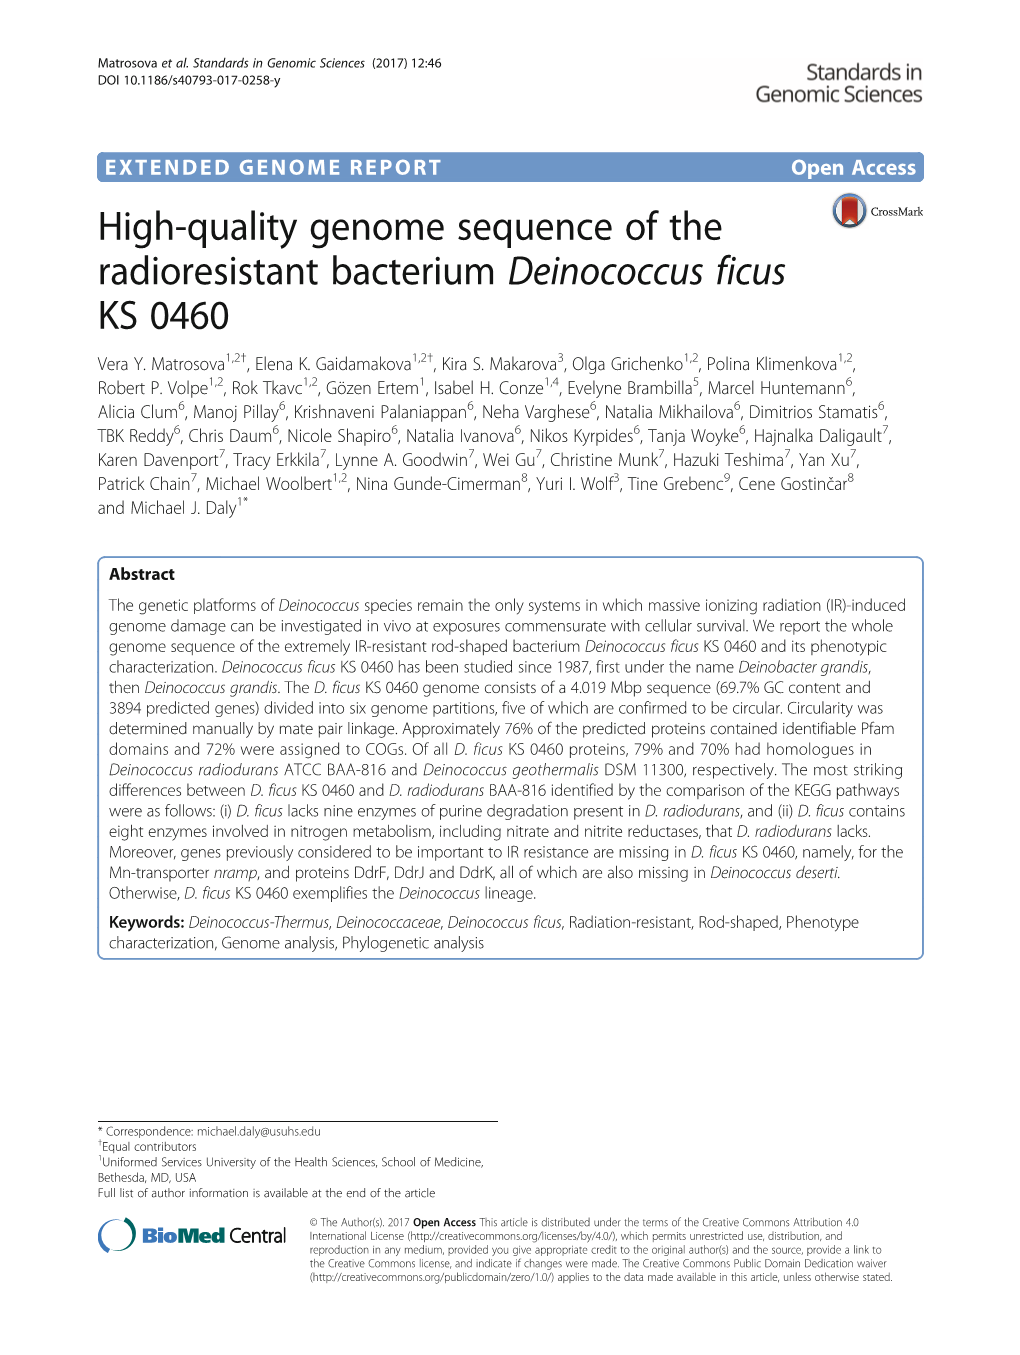 High-Quality Genome Sequence of the Radioresistant Bacterium Deinococcus Ficus KS 0460 Vera Y